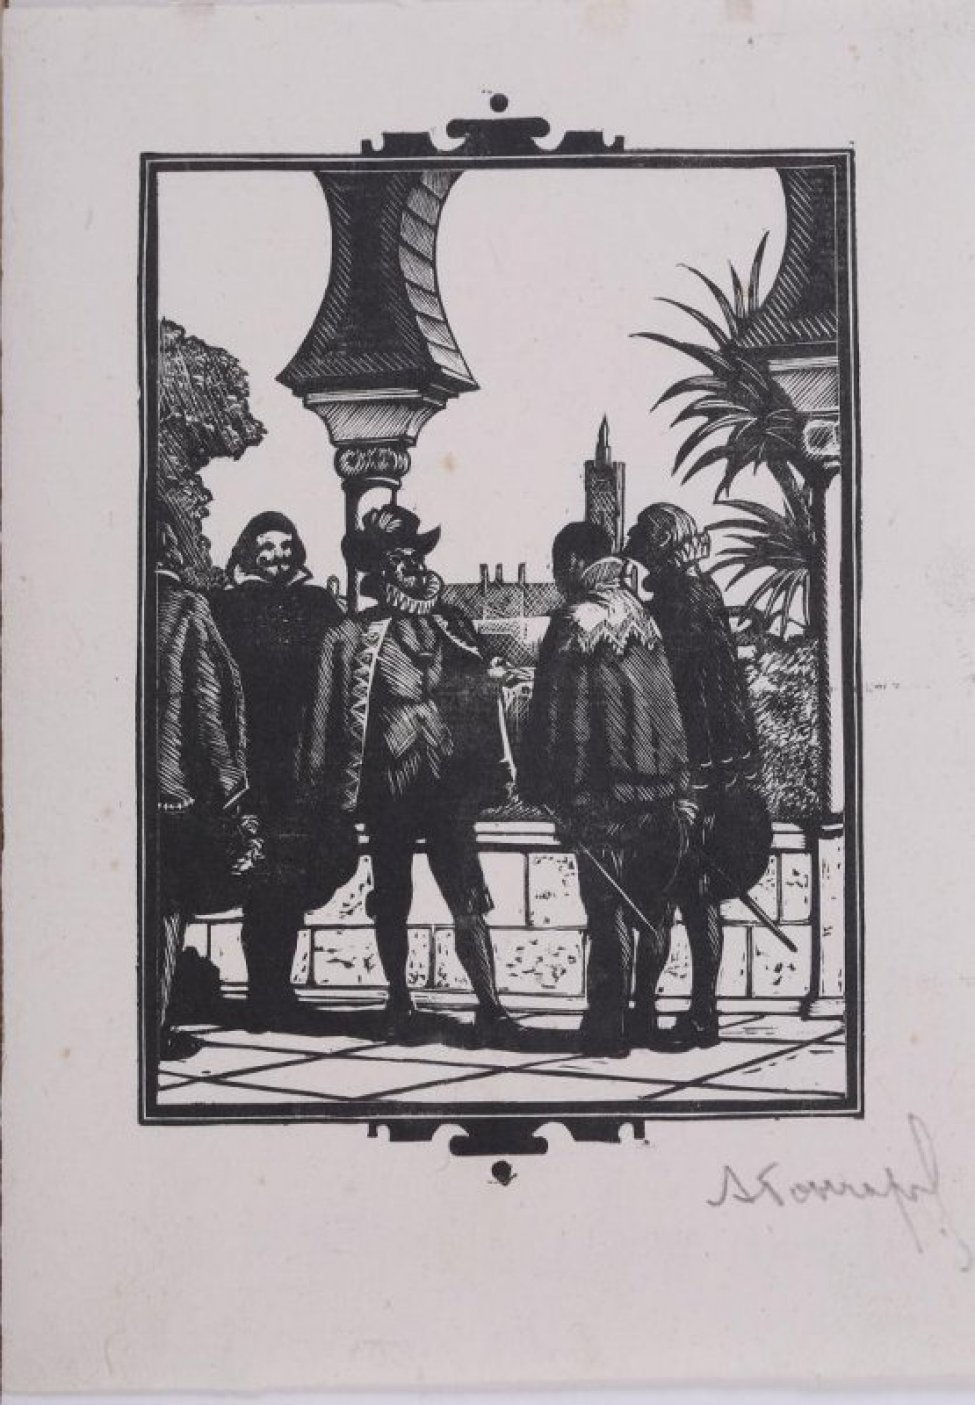 На фоне архитектурного пейзажа изображена группа мужчин из пяти человек в старинных испанских костюмах с высокими гофрированными воротниками: справа двое со шпагами и шляпами в руках, слева- трое, фигура одного из них фрагментирована левым краем гравюры.